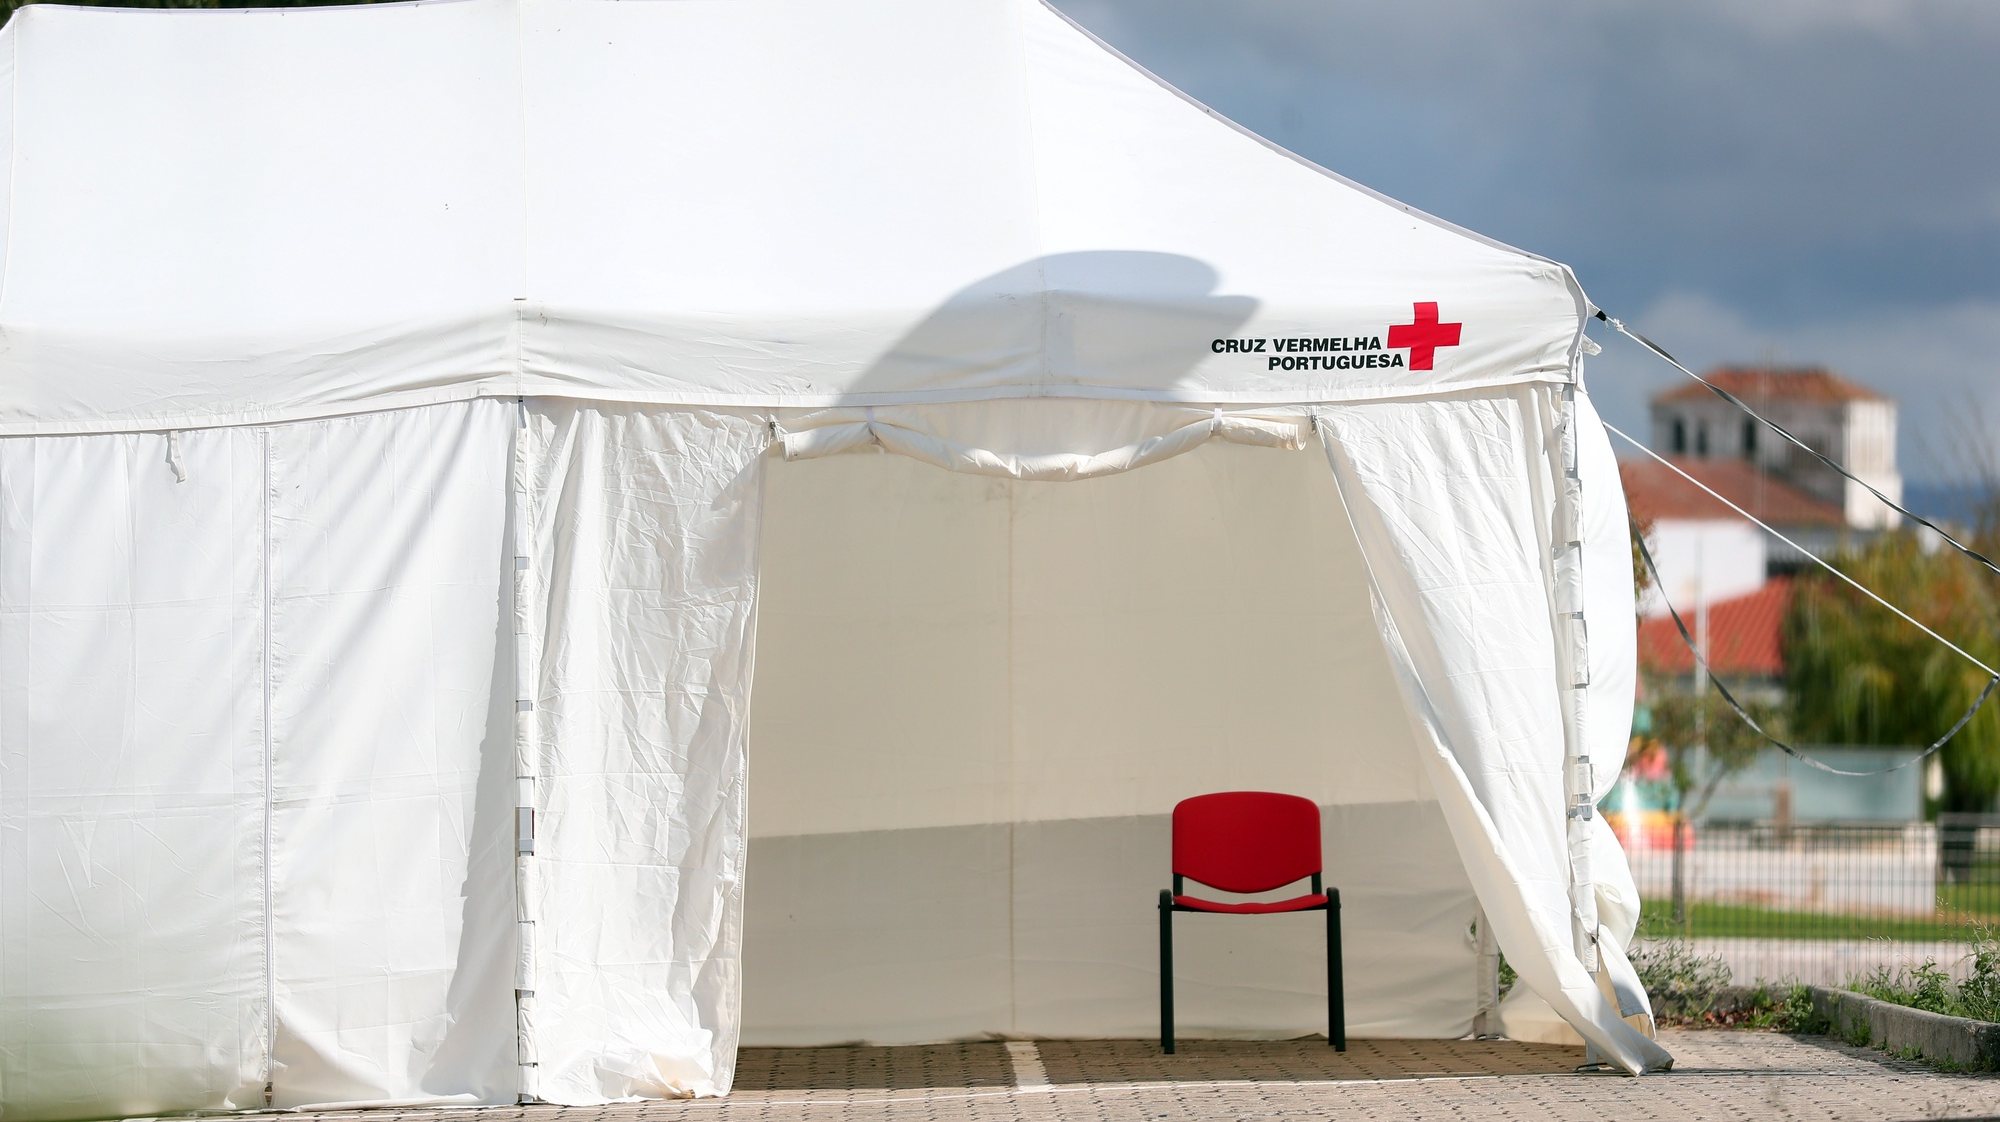 Uma tenda de campanha da Cruz Vermelha Portuguesa, instalada no Centro de Saúde de Borba que fechou hoje juntamente com as escolas de Borba e do vizinho concelho de Vila Viçosa, devido ao aumento de casos de covid-19 nas comunidades, em Borba, 23 de outubro de 2020. NUNO VEIGA/LUSA